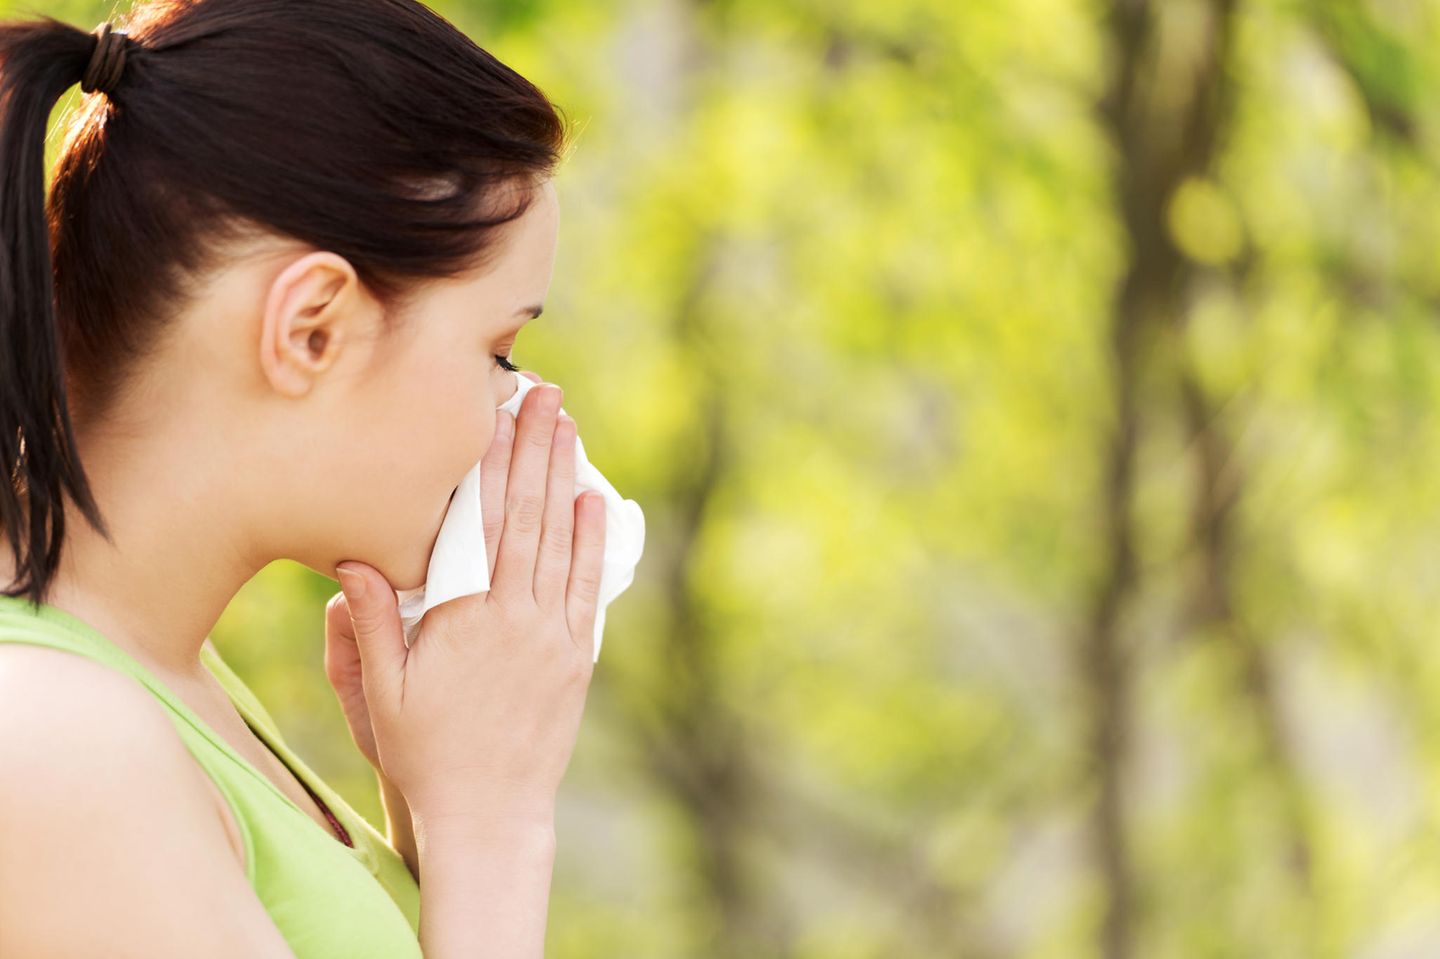 Pollenallergie: Frau mit Schnupfen